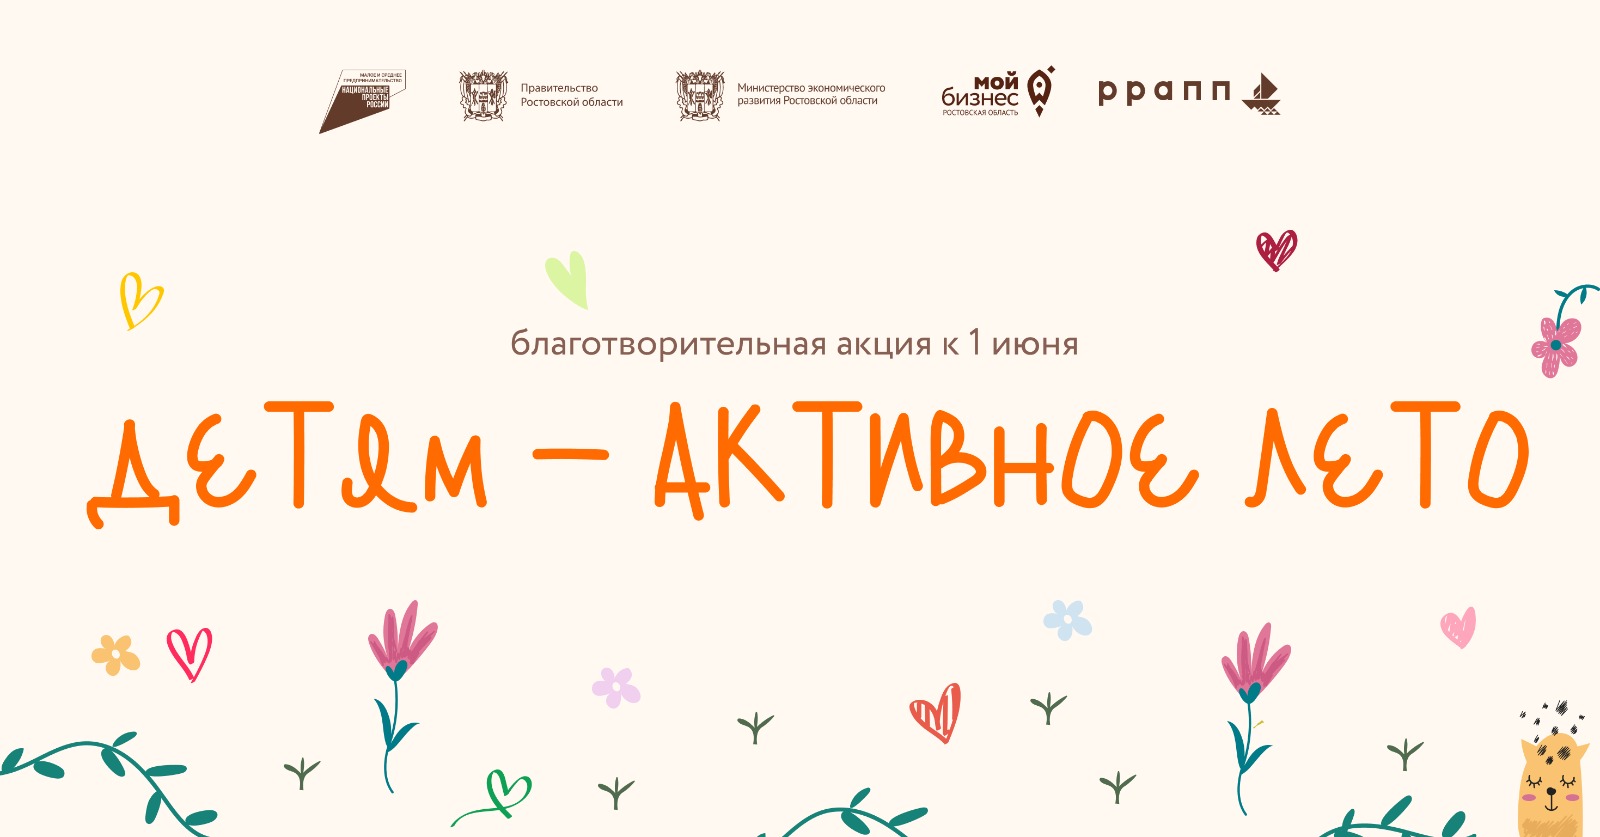 В Ростовской области стартовала благотворительная акция «Детям-активное лето!»